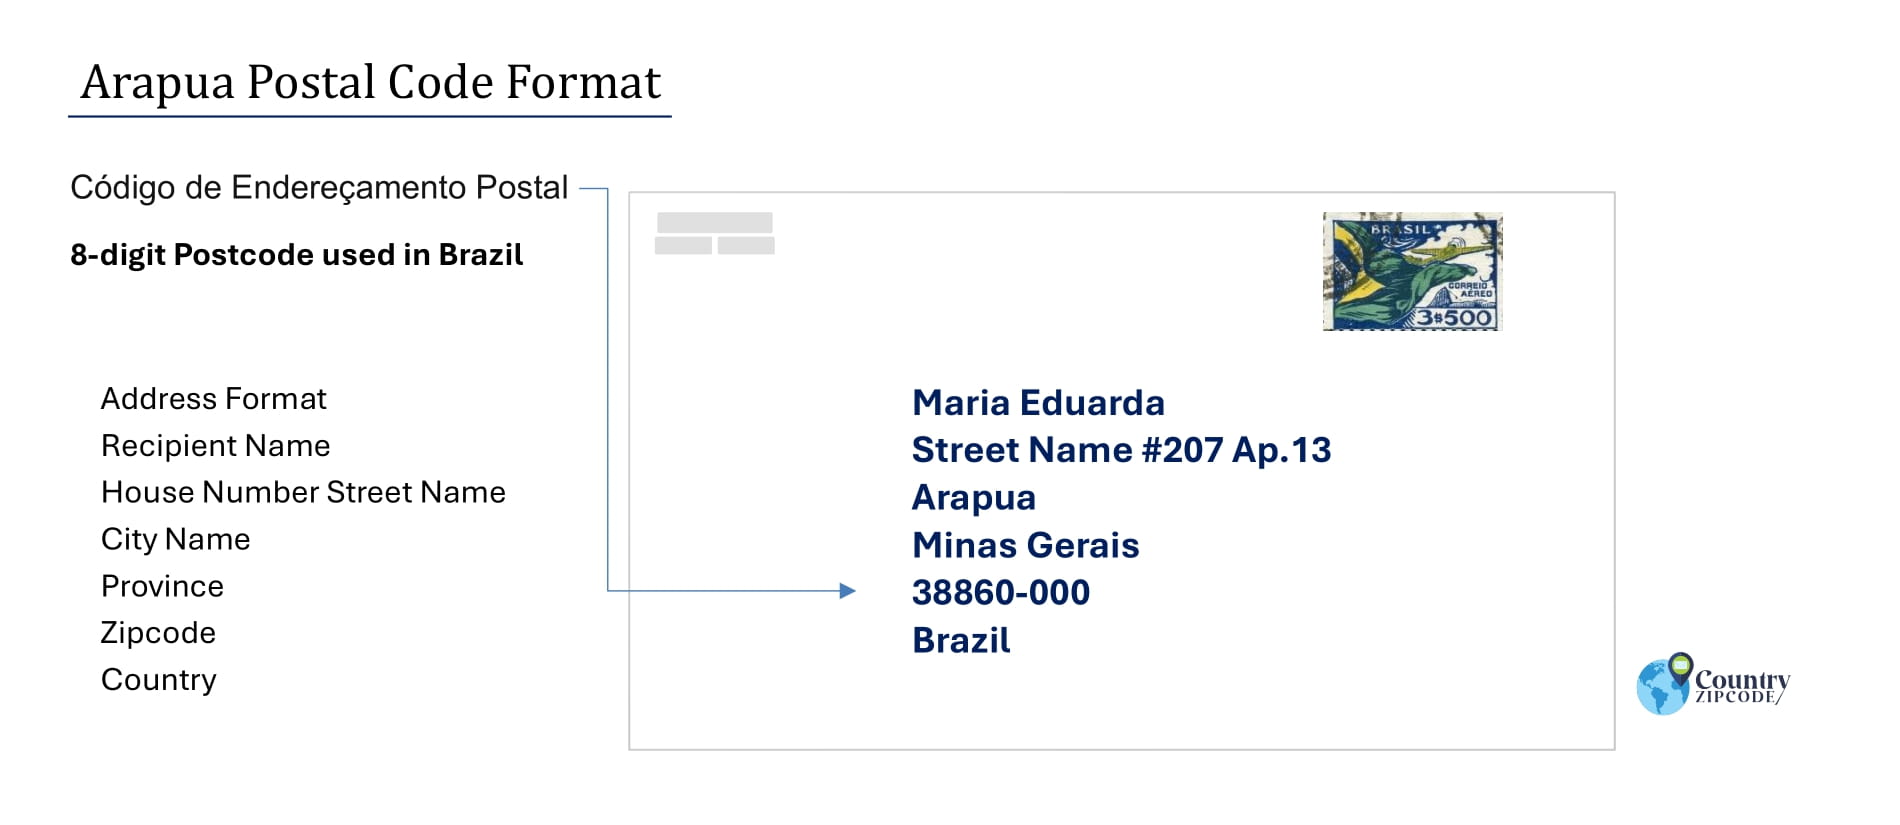 Example of Codigo de Enderecamento Postal and Address format of Arapua Minas Gerais Brazil